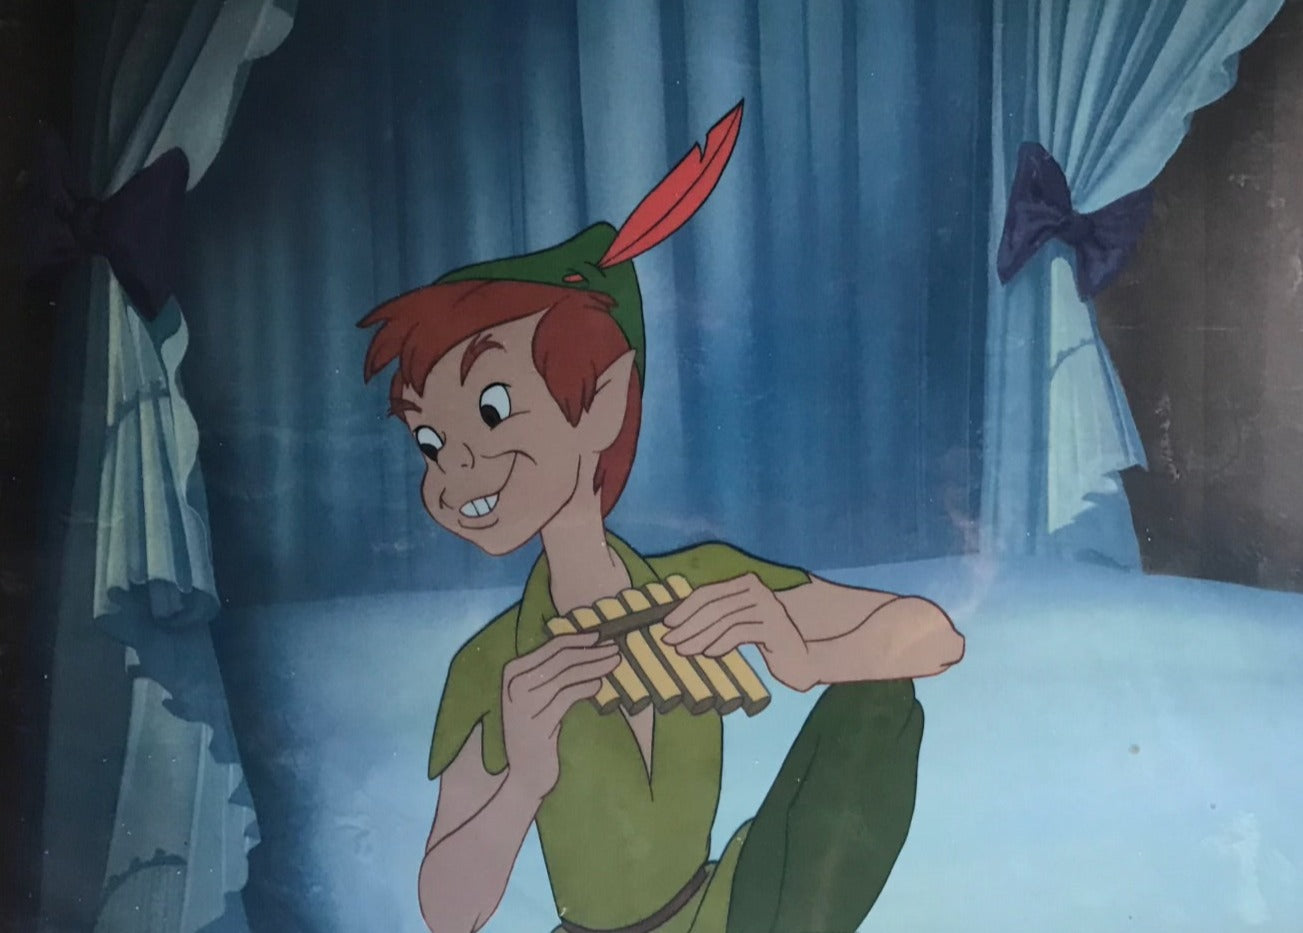 Original Walt Disney Production Cel from Peter Pan featuring Peter Pan